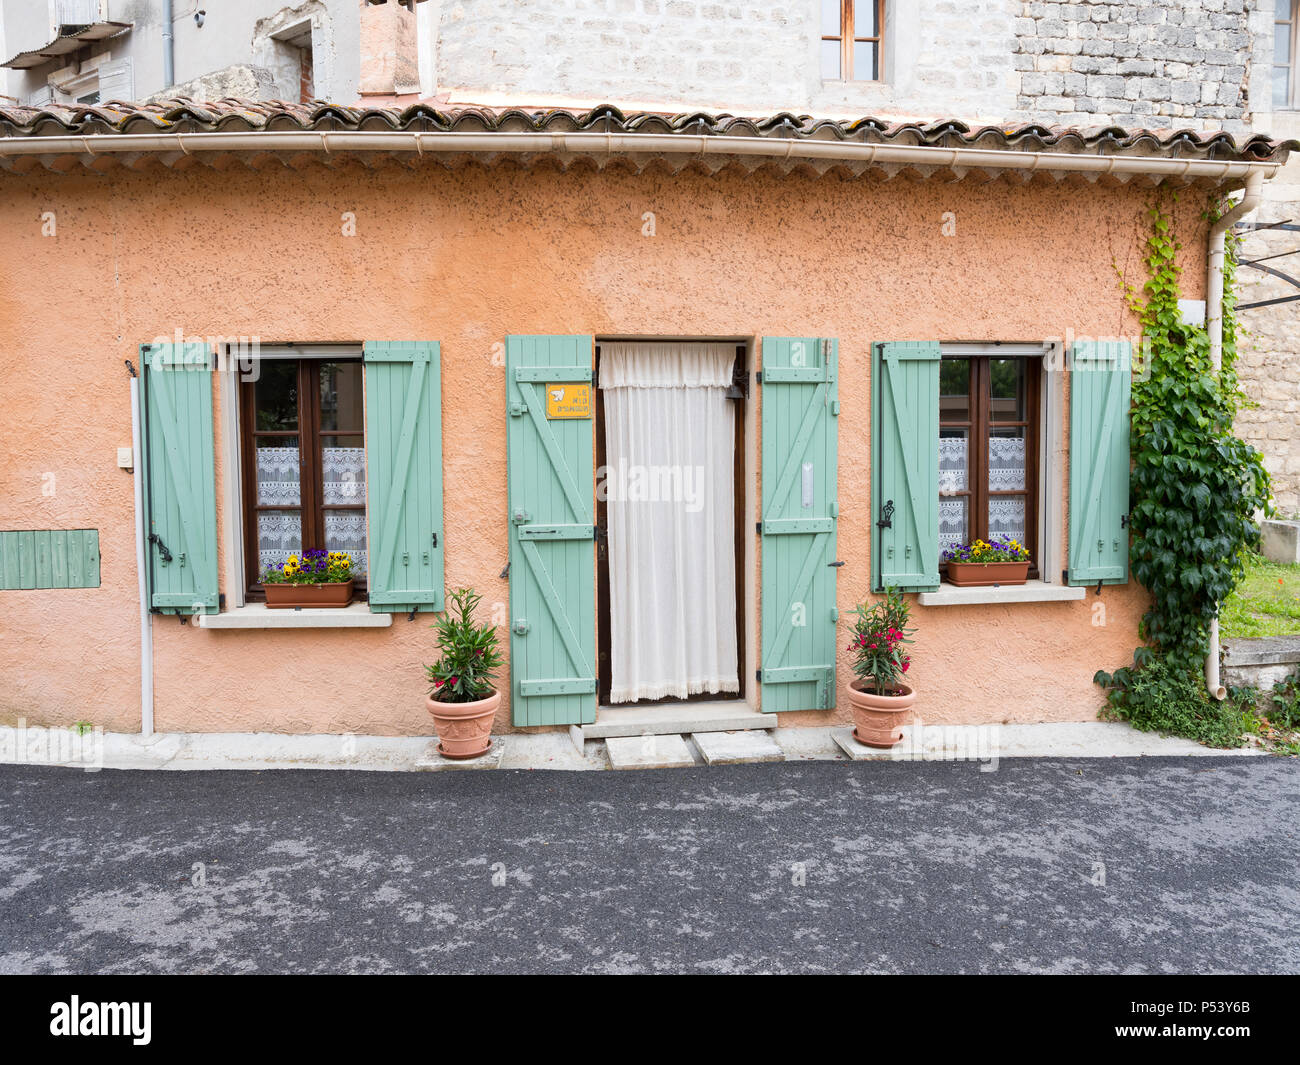 Vieille maison en provence ville de Manosque avec volets turquoise Banque D'Images